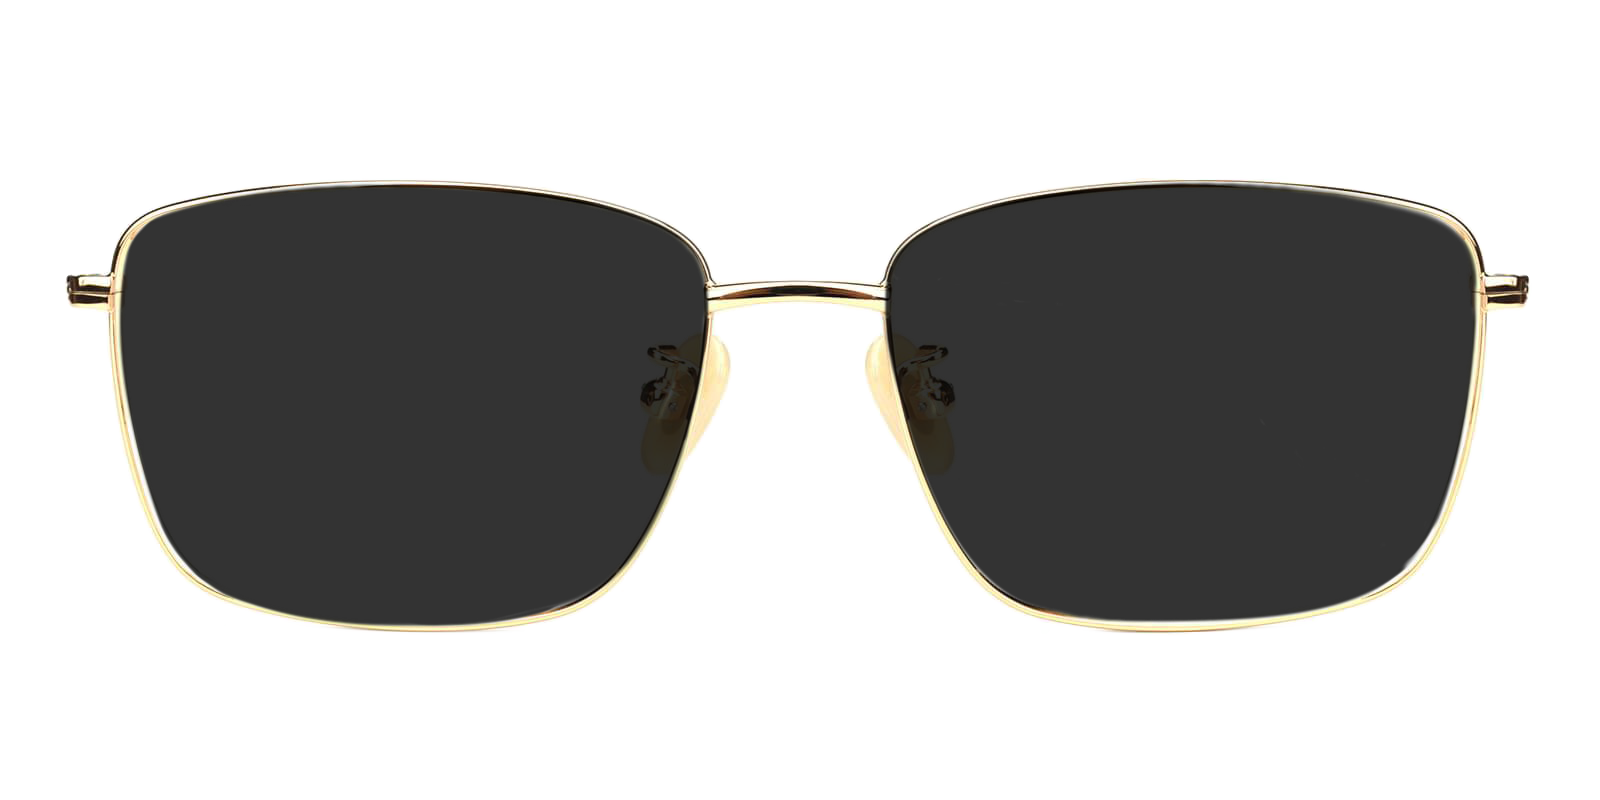 Men's Sunglasses | Sunglasses for Men | ABBE Glasses